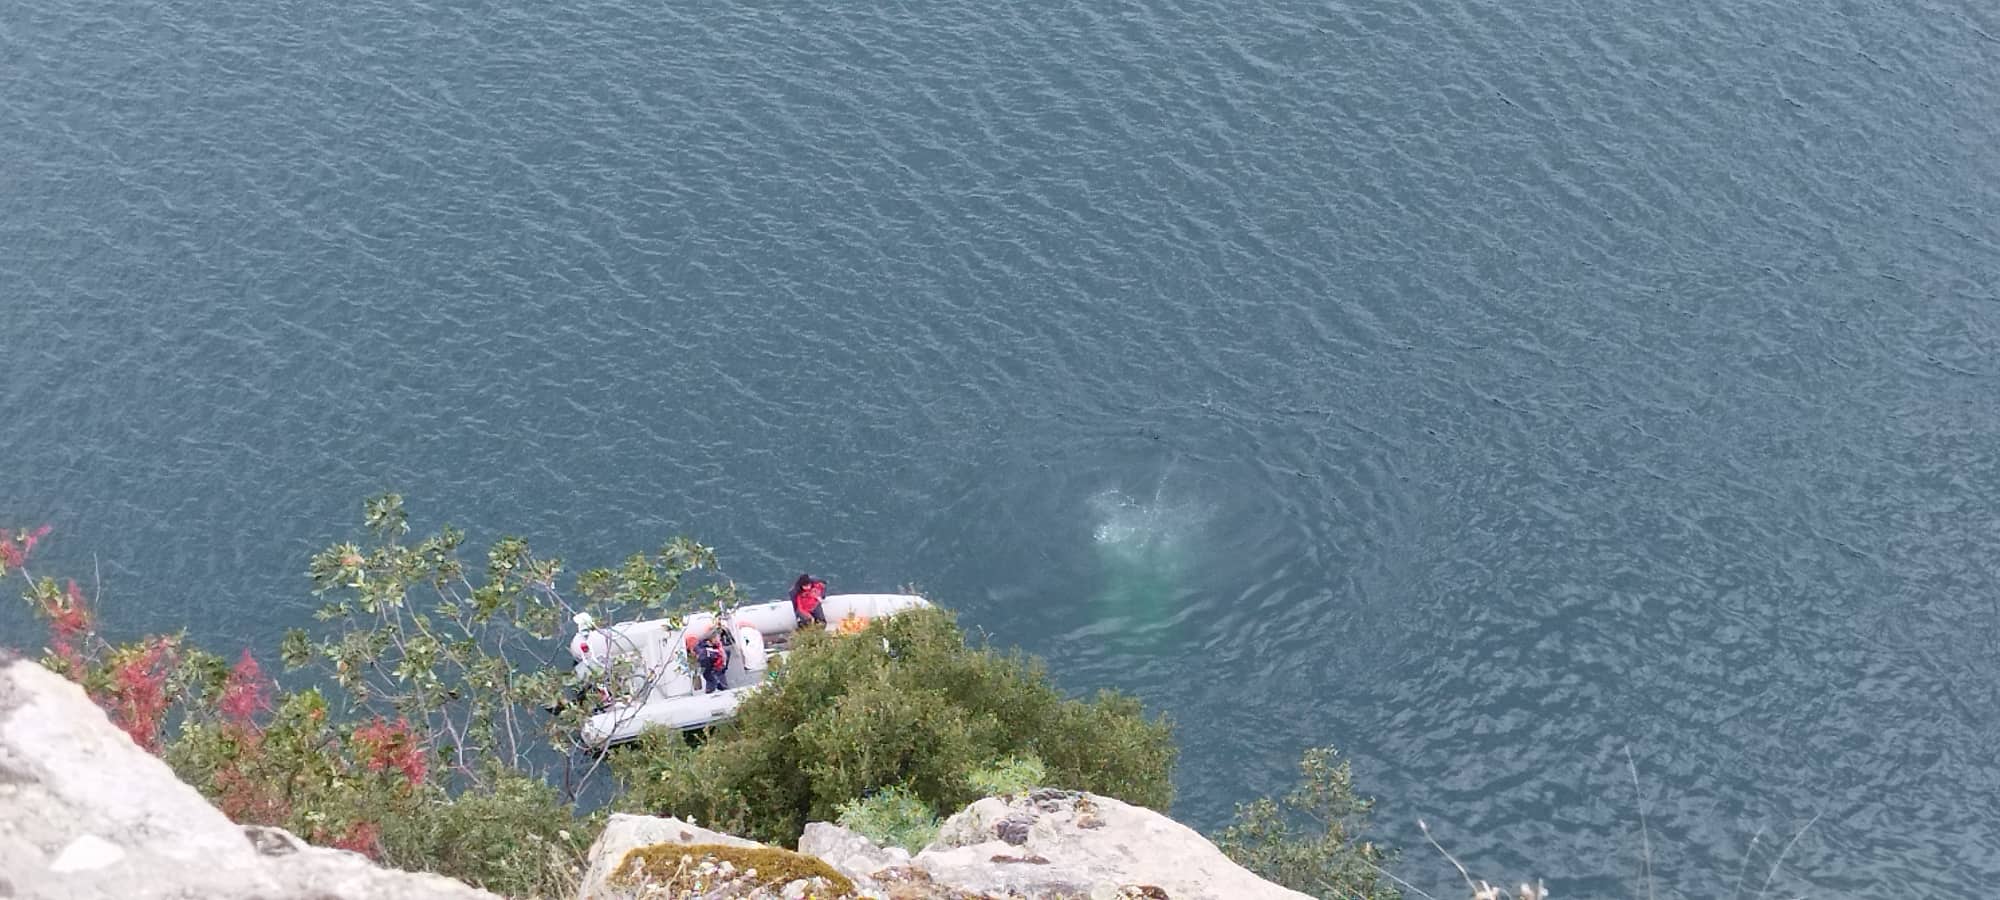 Κοζάνη: Στον αγνοούμενο ψαρά ανήκει το αυτοκίνητο που βρέθηκε στη λίμνη του Πολυφύτου – Δείτε το βίντεο από την επιχείρηση ανάσυρσης